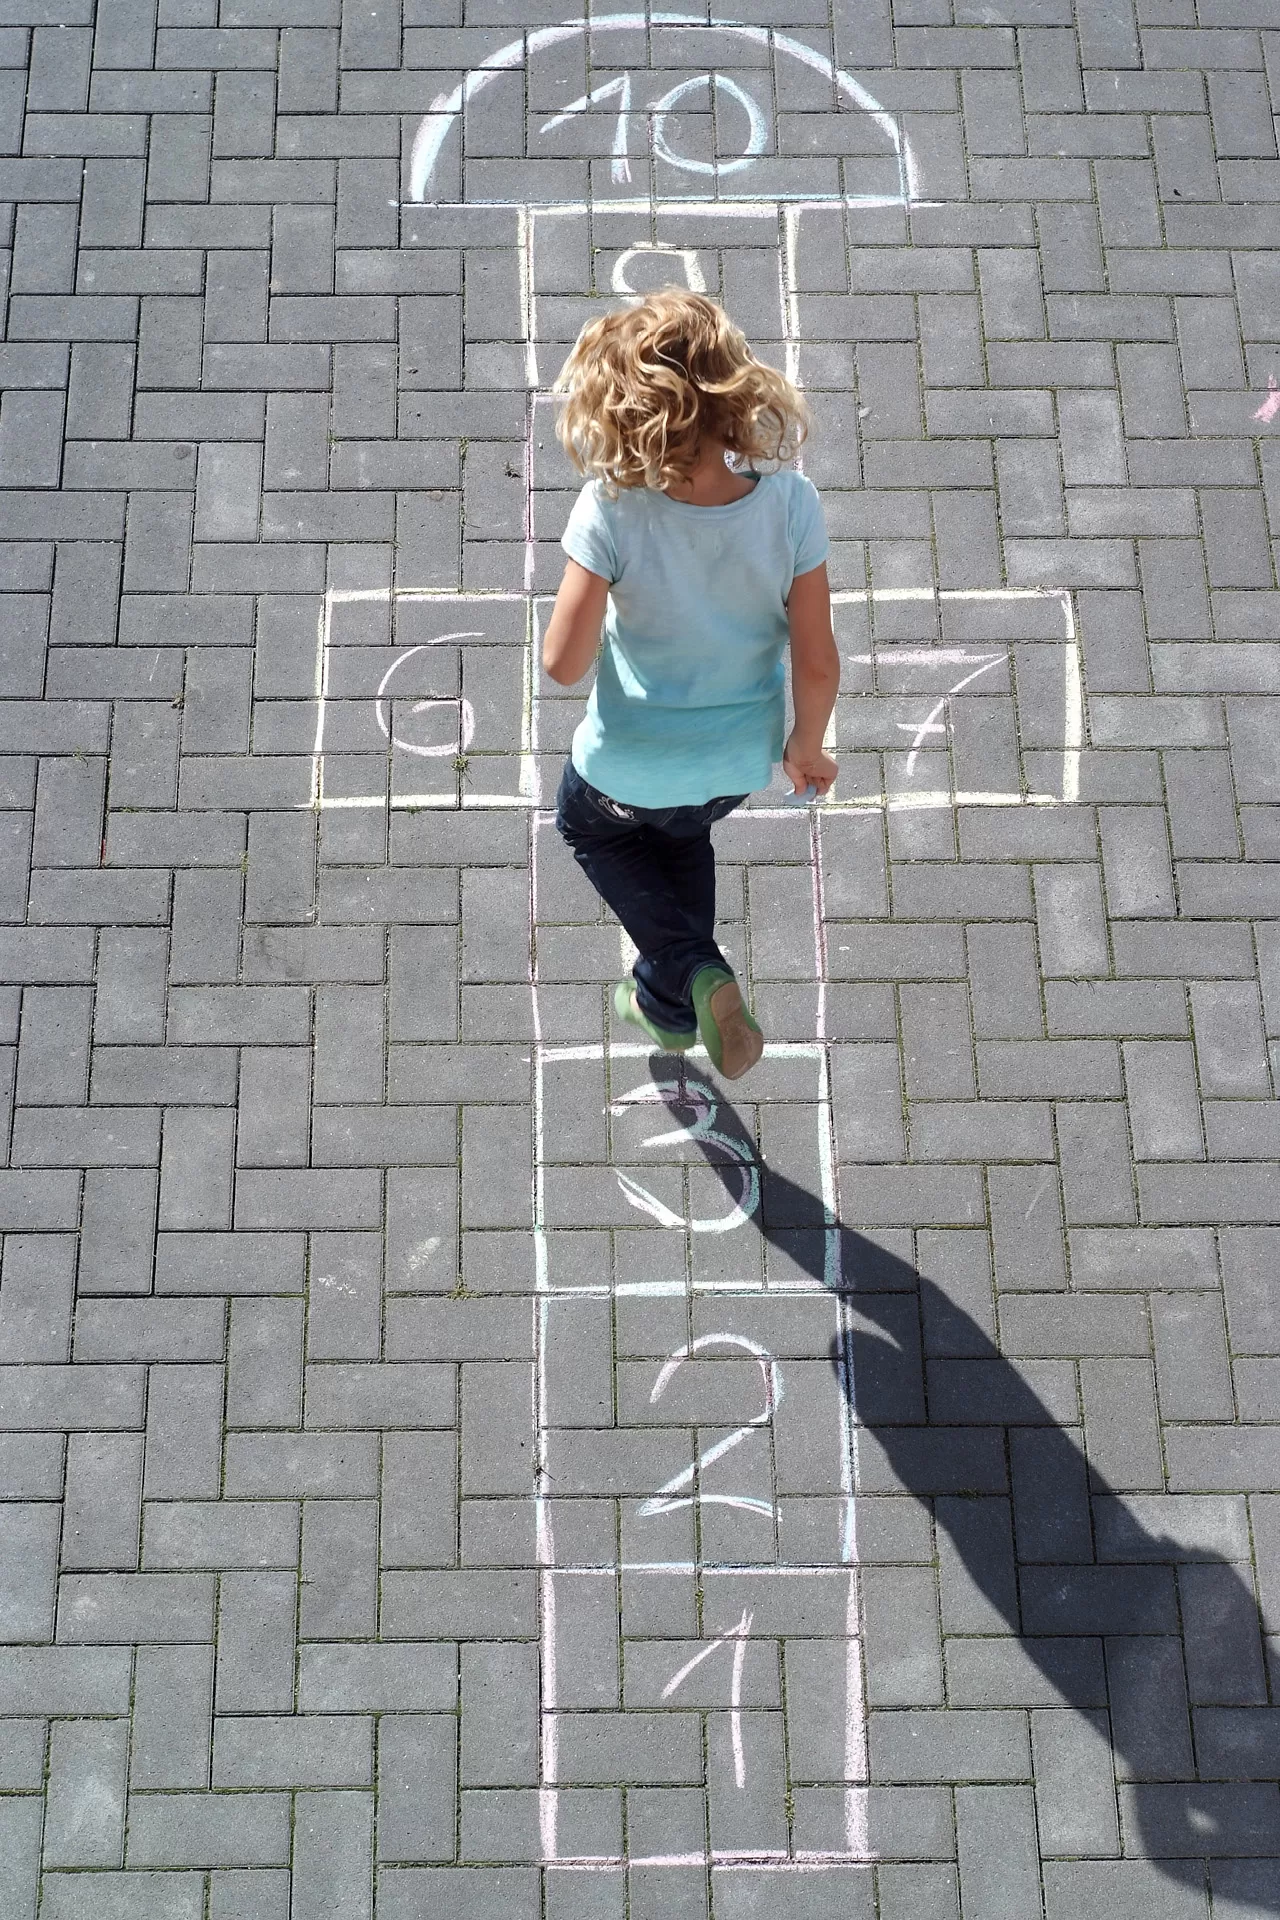 Kind hüpft Himmel-und-Hölle-Spiel, das mit Kreide auf den Boden gemalt ist.